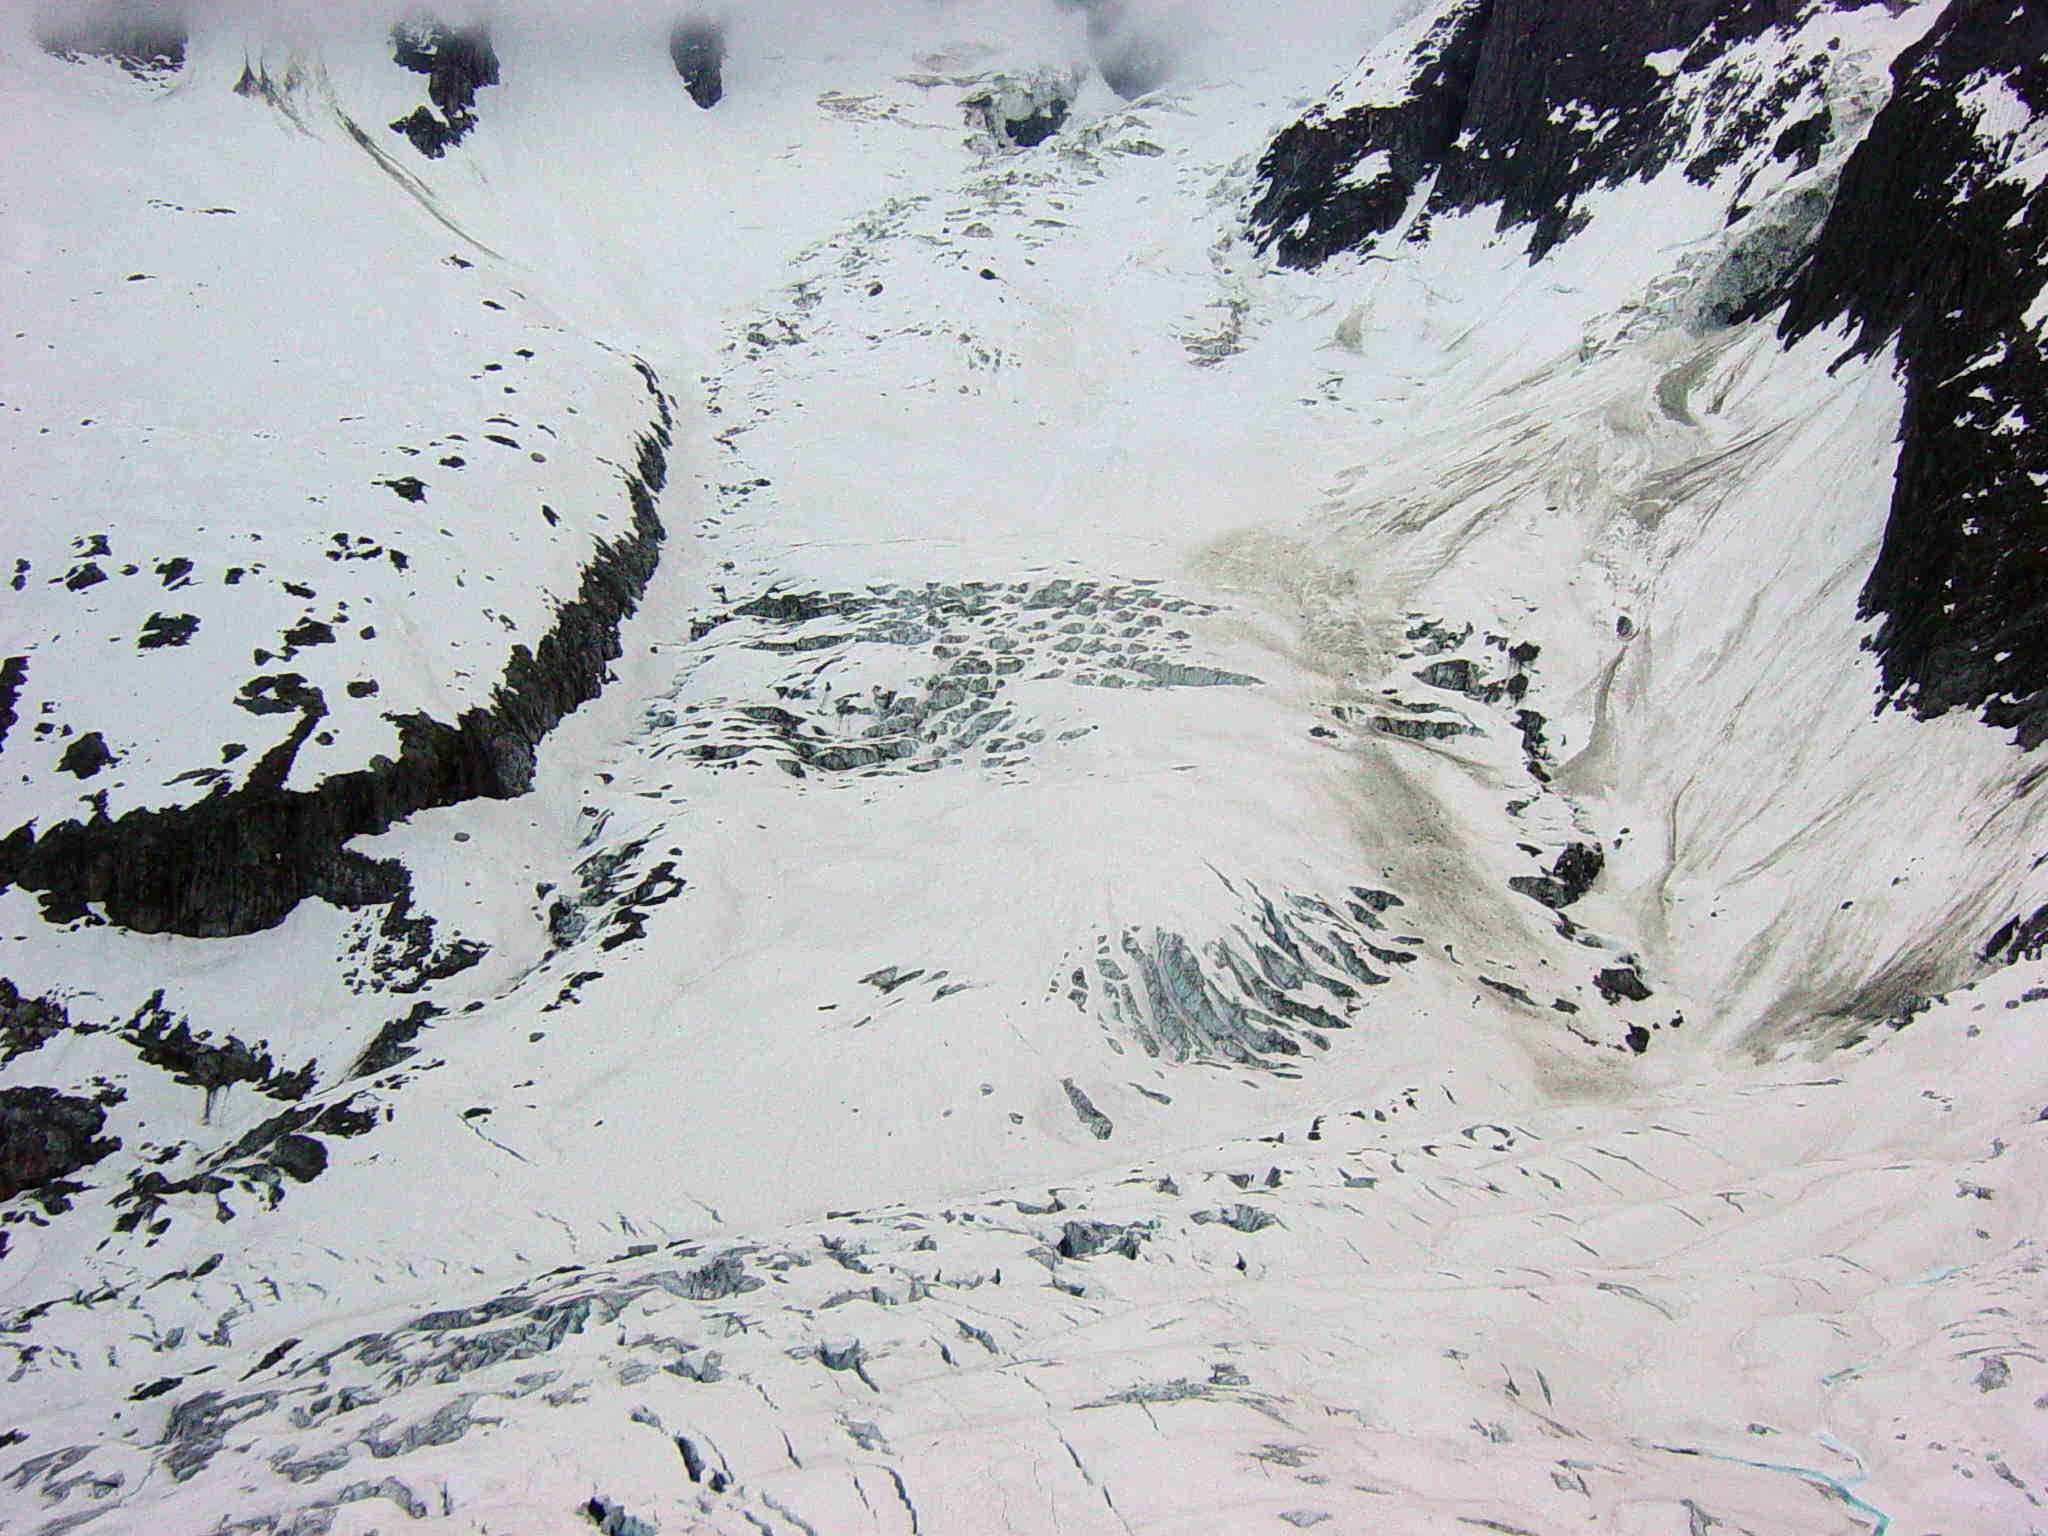 glacier des périades : le dimanche matin avant le départ avec un peu plus de lumière